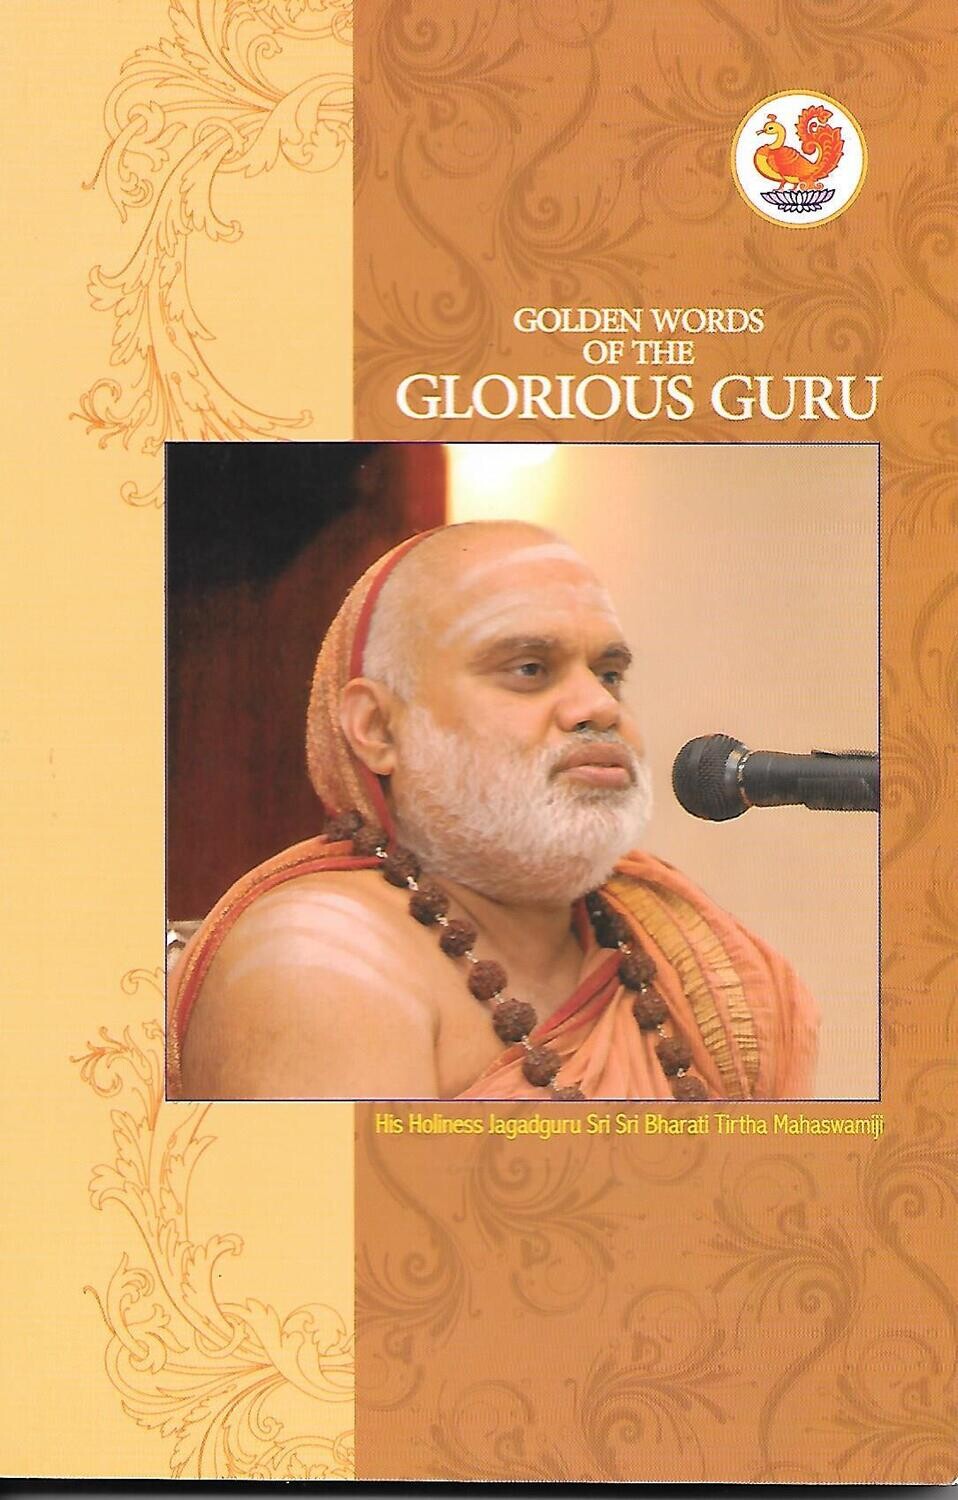 Golden words of the Glorious Guru